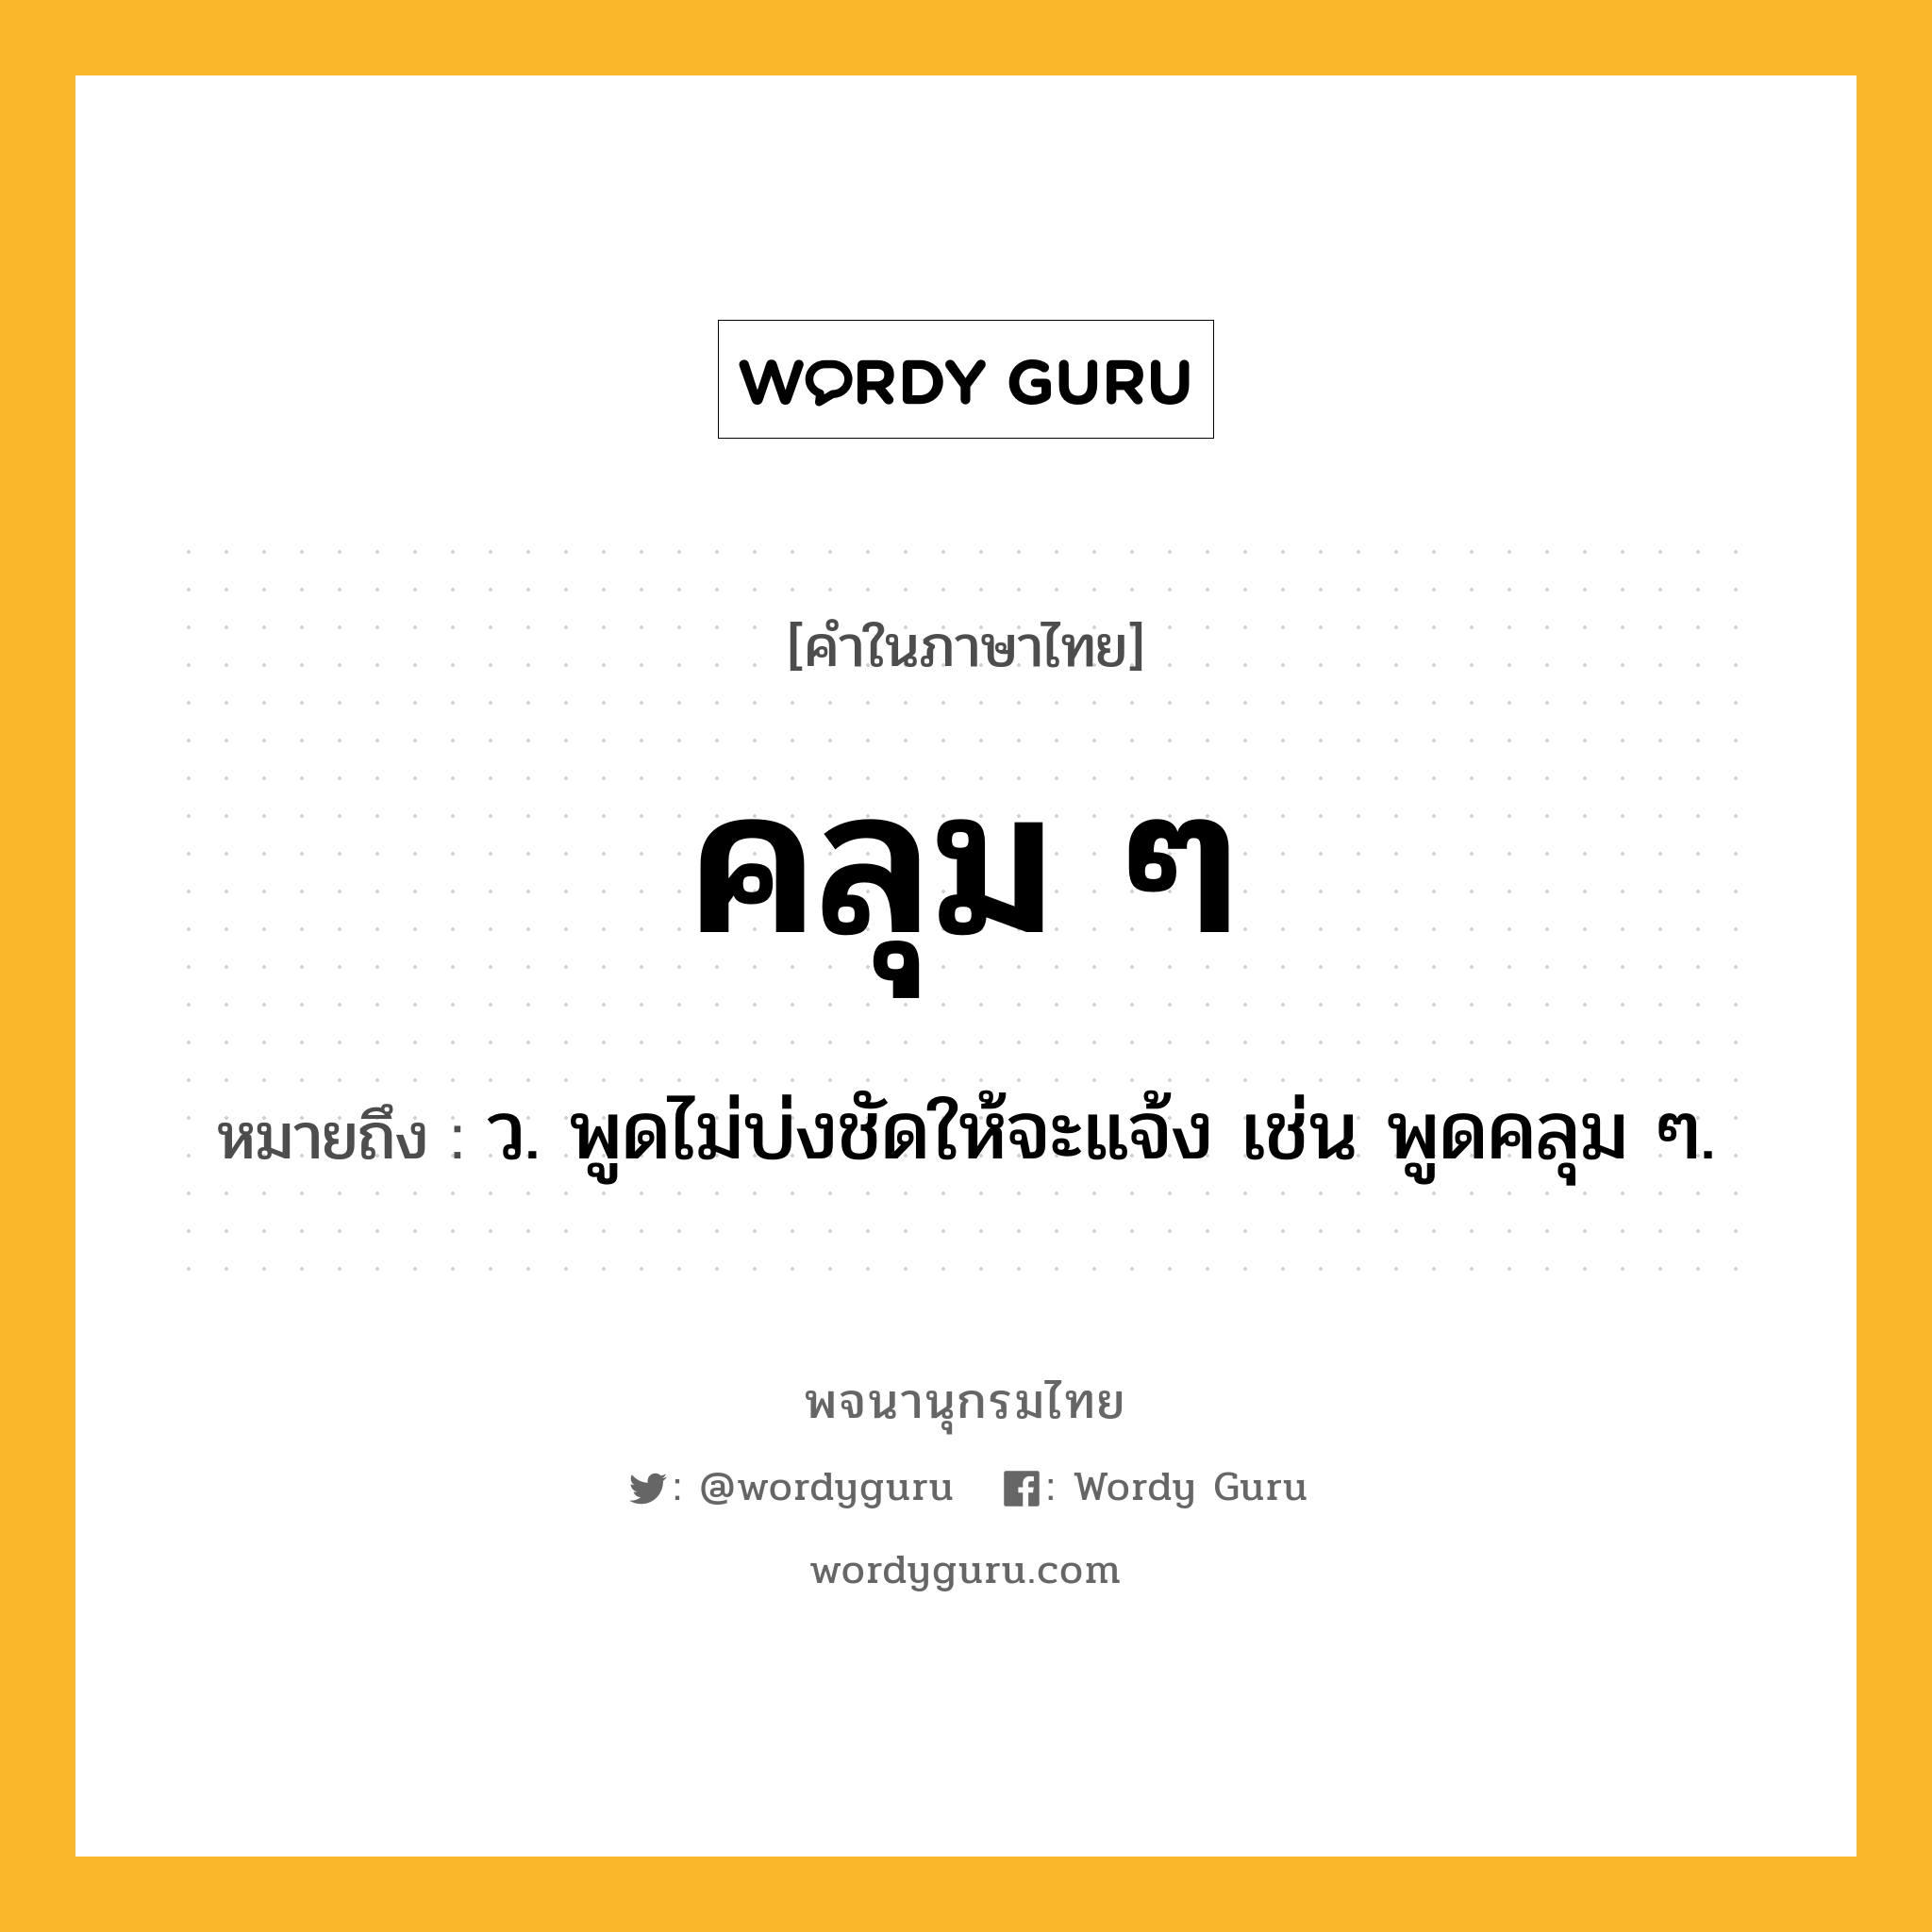 คลุม ๆ ความหมาย หมายถึงอะไร?, คำในภาษาไทย คลุม ๆ หมายถึง ว. พูดไม่บ่งชัดให้จะแจ้ง เช่น พูดคลุม ๆ.